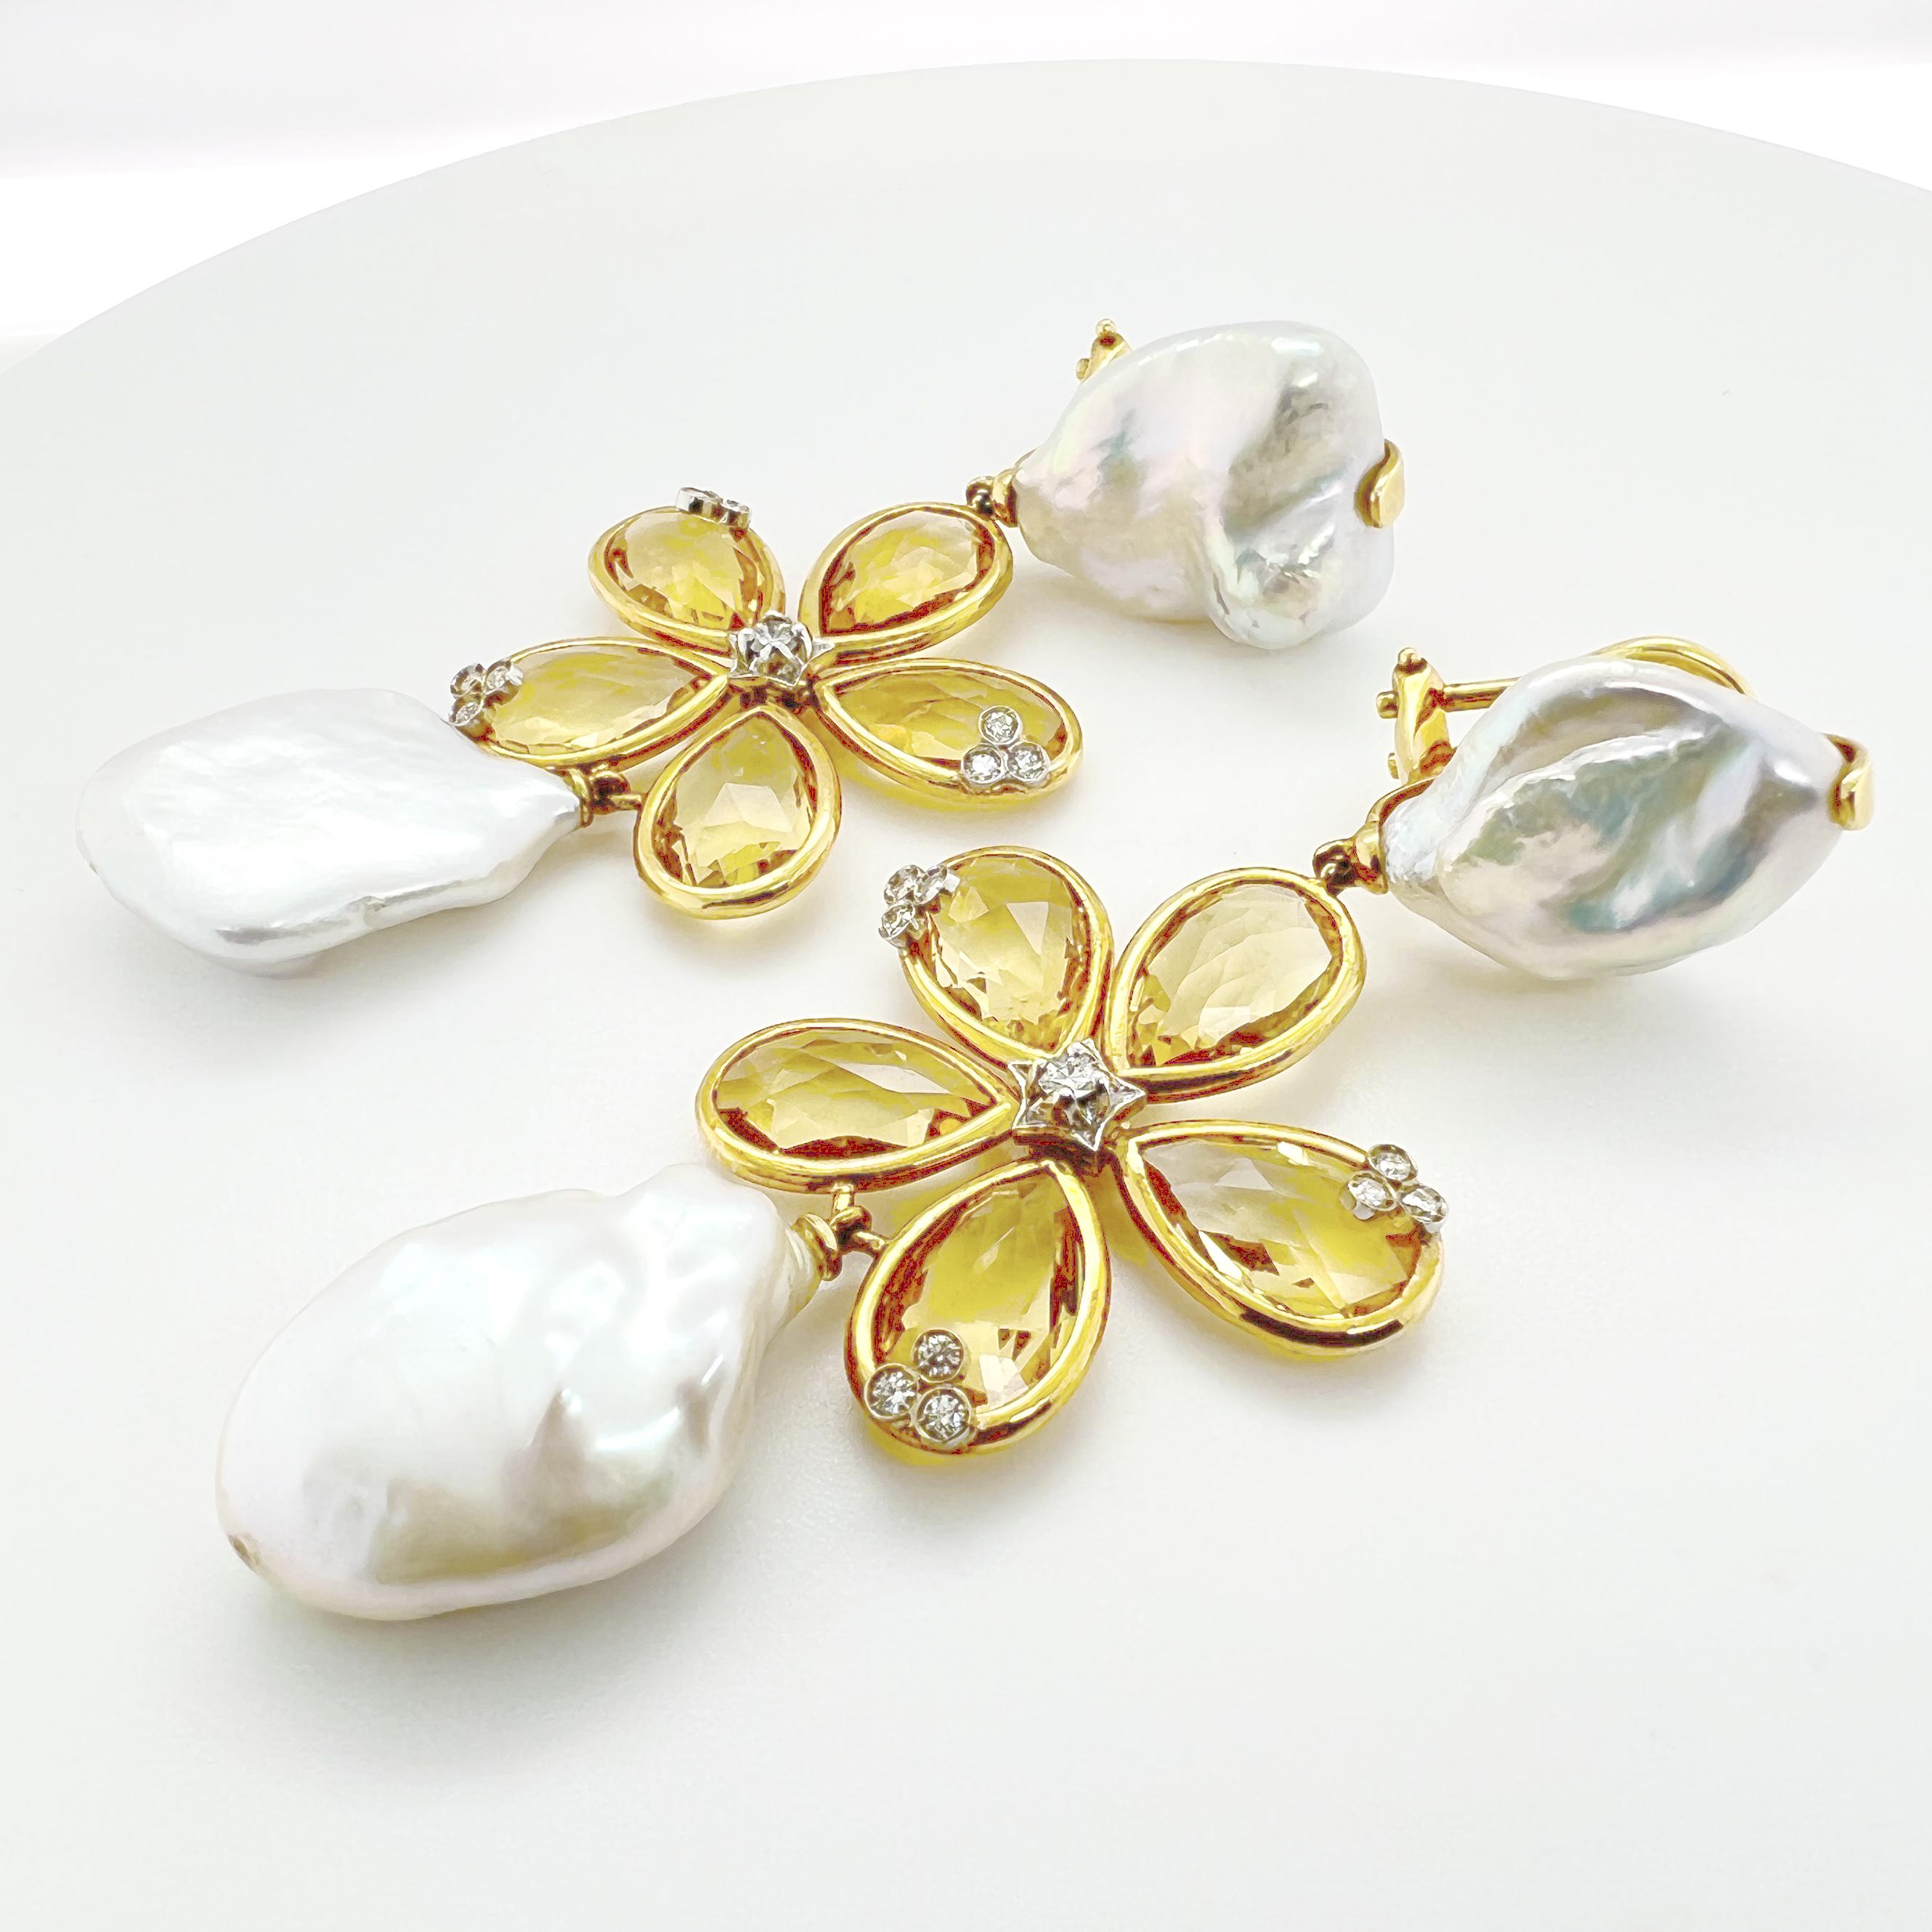 Ce bracelet en or jaune 18kt présente un délicat motif de fleur avec du quartz citrine, des perles et des diamants. Le motif floral ajoute une touche fantaisiste et féminine au bracelet, tandis que les pierres de quartz citrine apportent une couleur